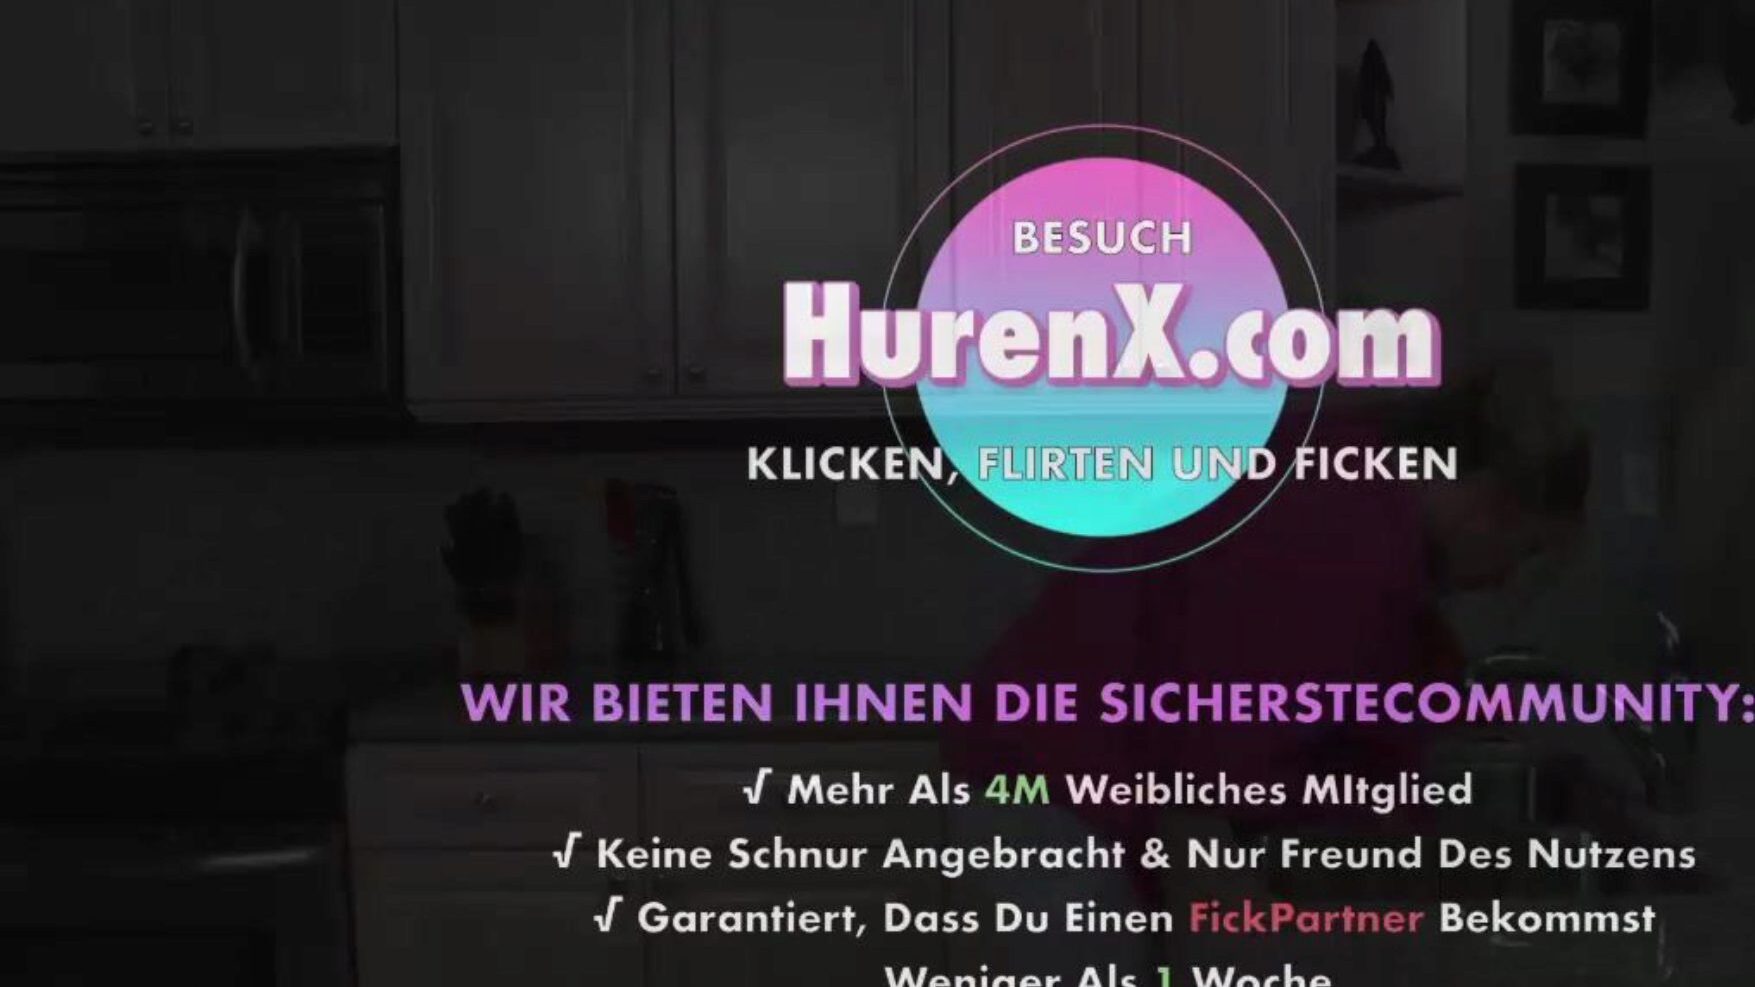 stiefmutter will meine hilfe, porno xnxc gratuit b5: ceasul xhamster stiefmutter will meine hilfe scena filmului pe xhamster, cel mai mare site web cu canale HD fuck-fest cu tone de clipuri gratuite de pornografie germană xnxc & mutter